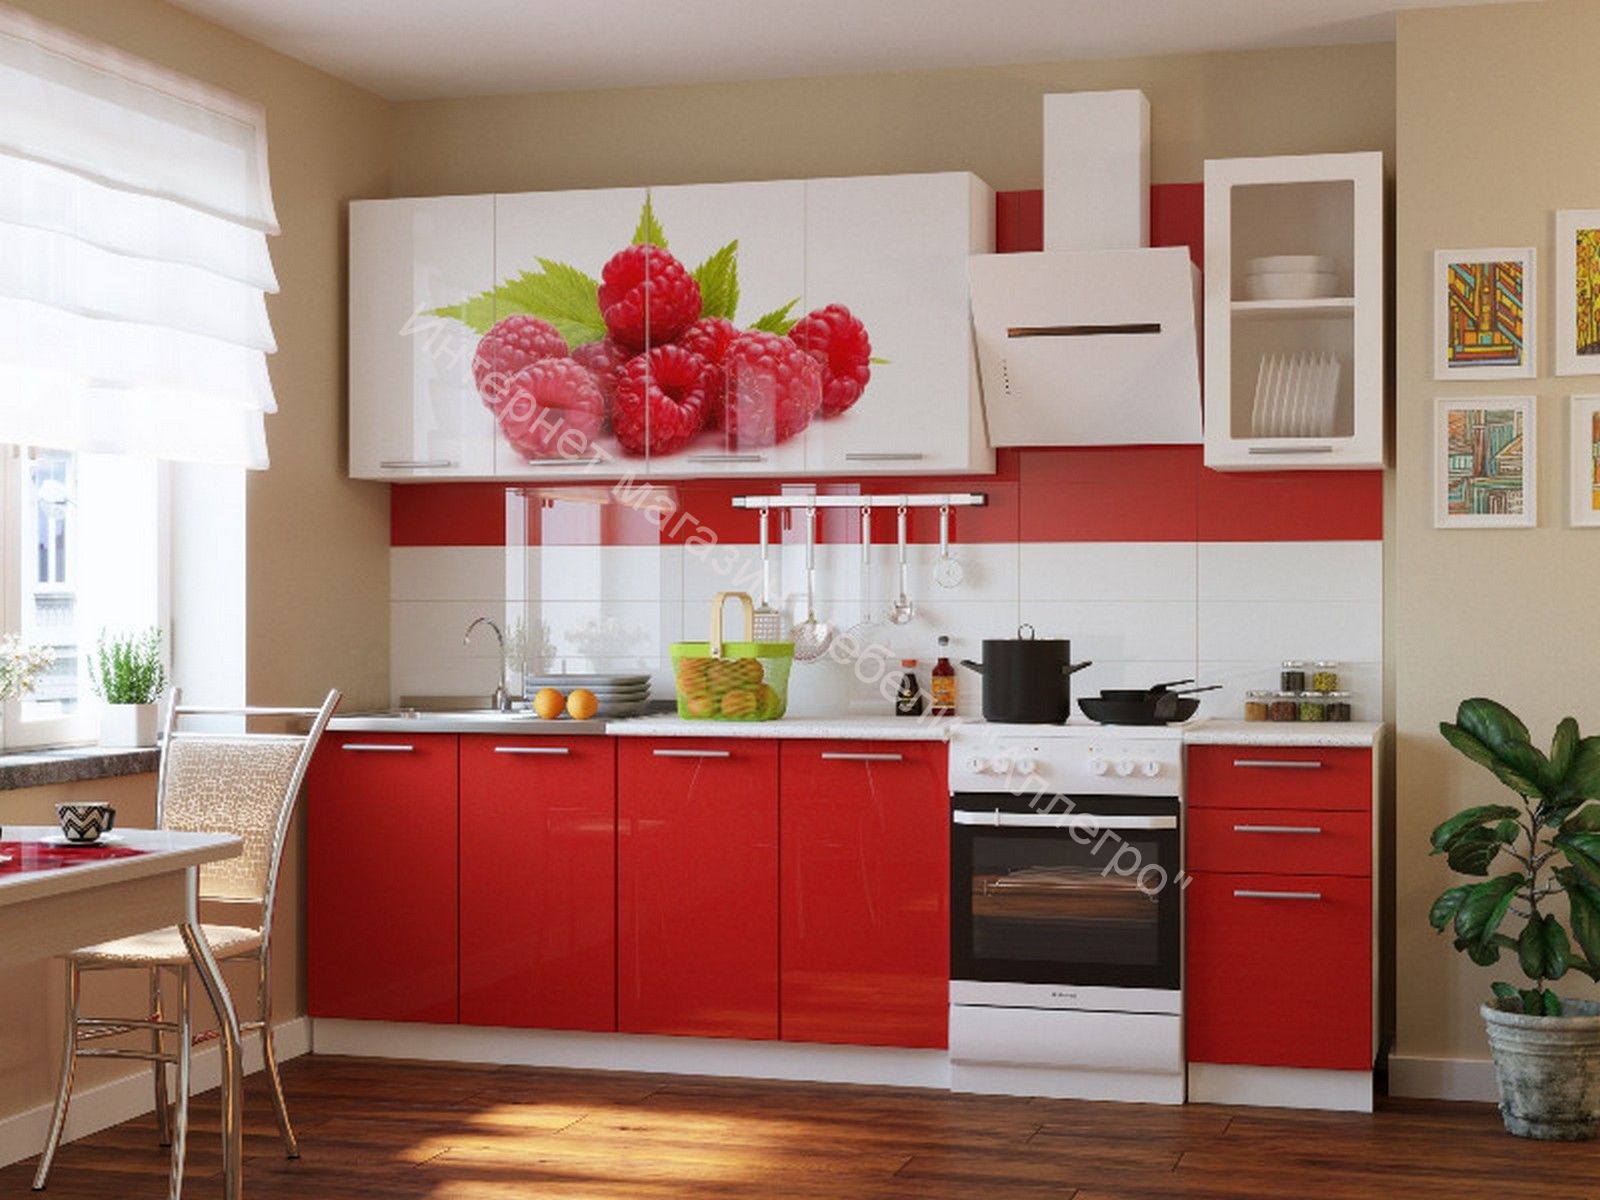 Deshevaya mebel ru. Кухня "красные маки" 1,6м. Кухня в Красном цвете. Красивый кухонный гарнитур.